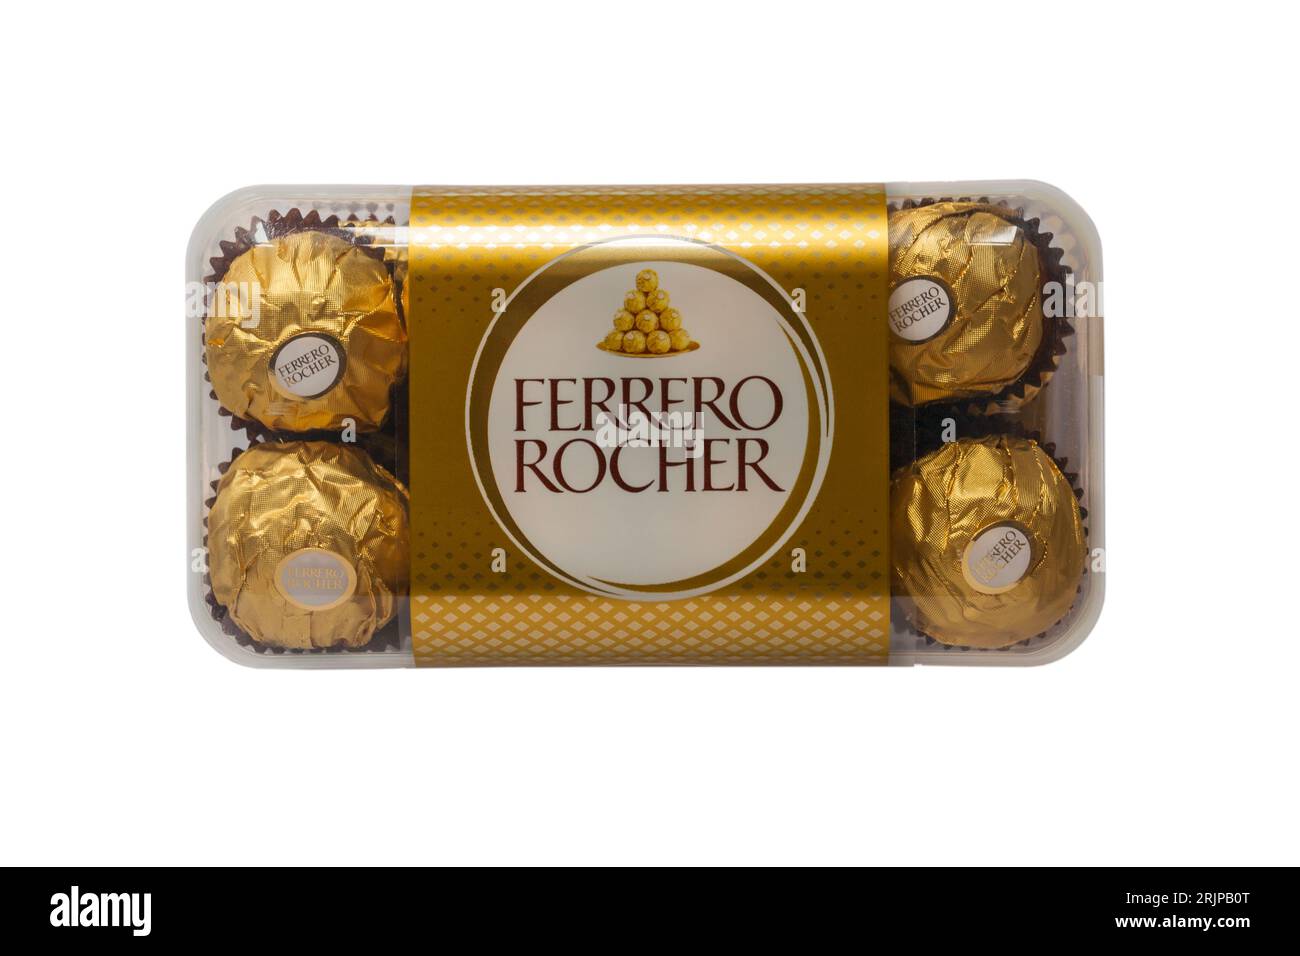 896 Photos de Ferrero Rocher - Photos de stock gratuites et libres